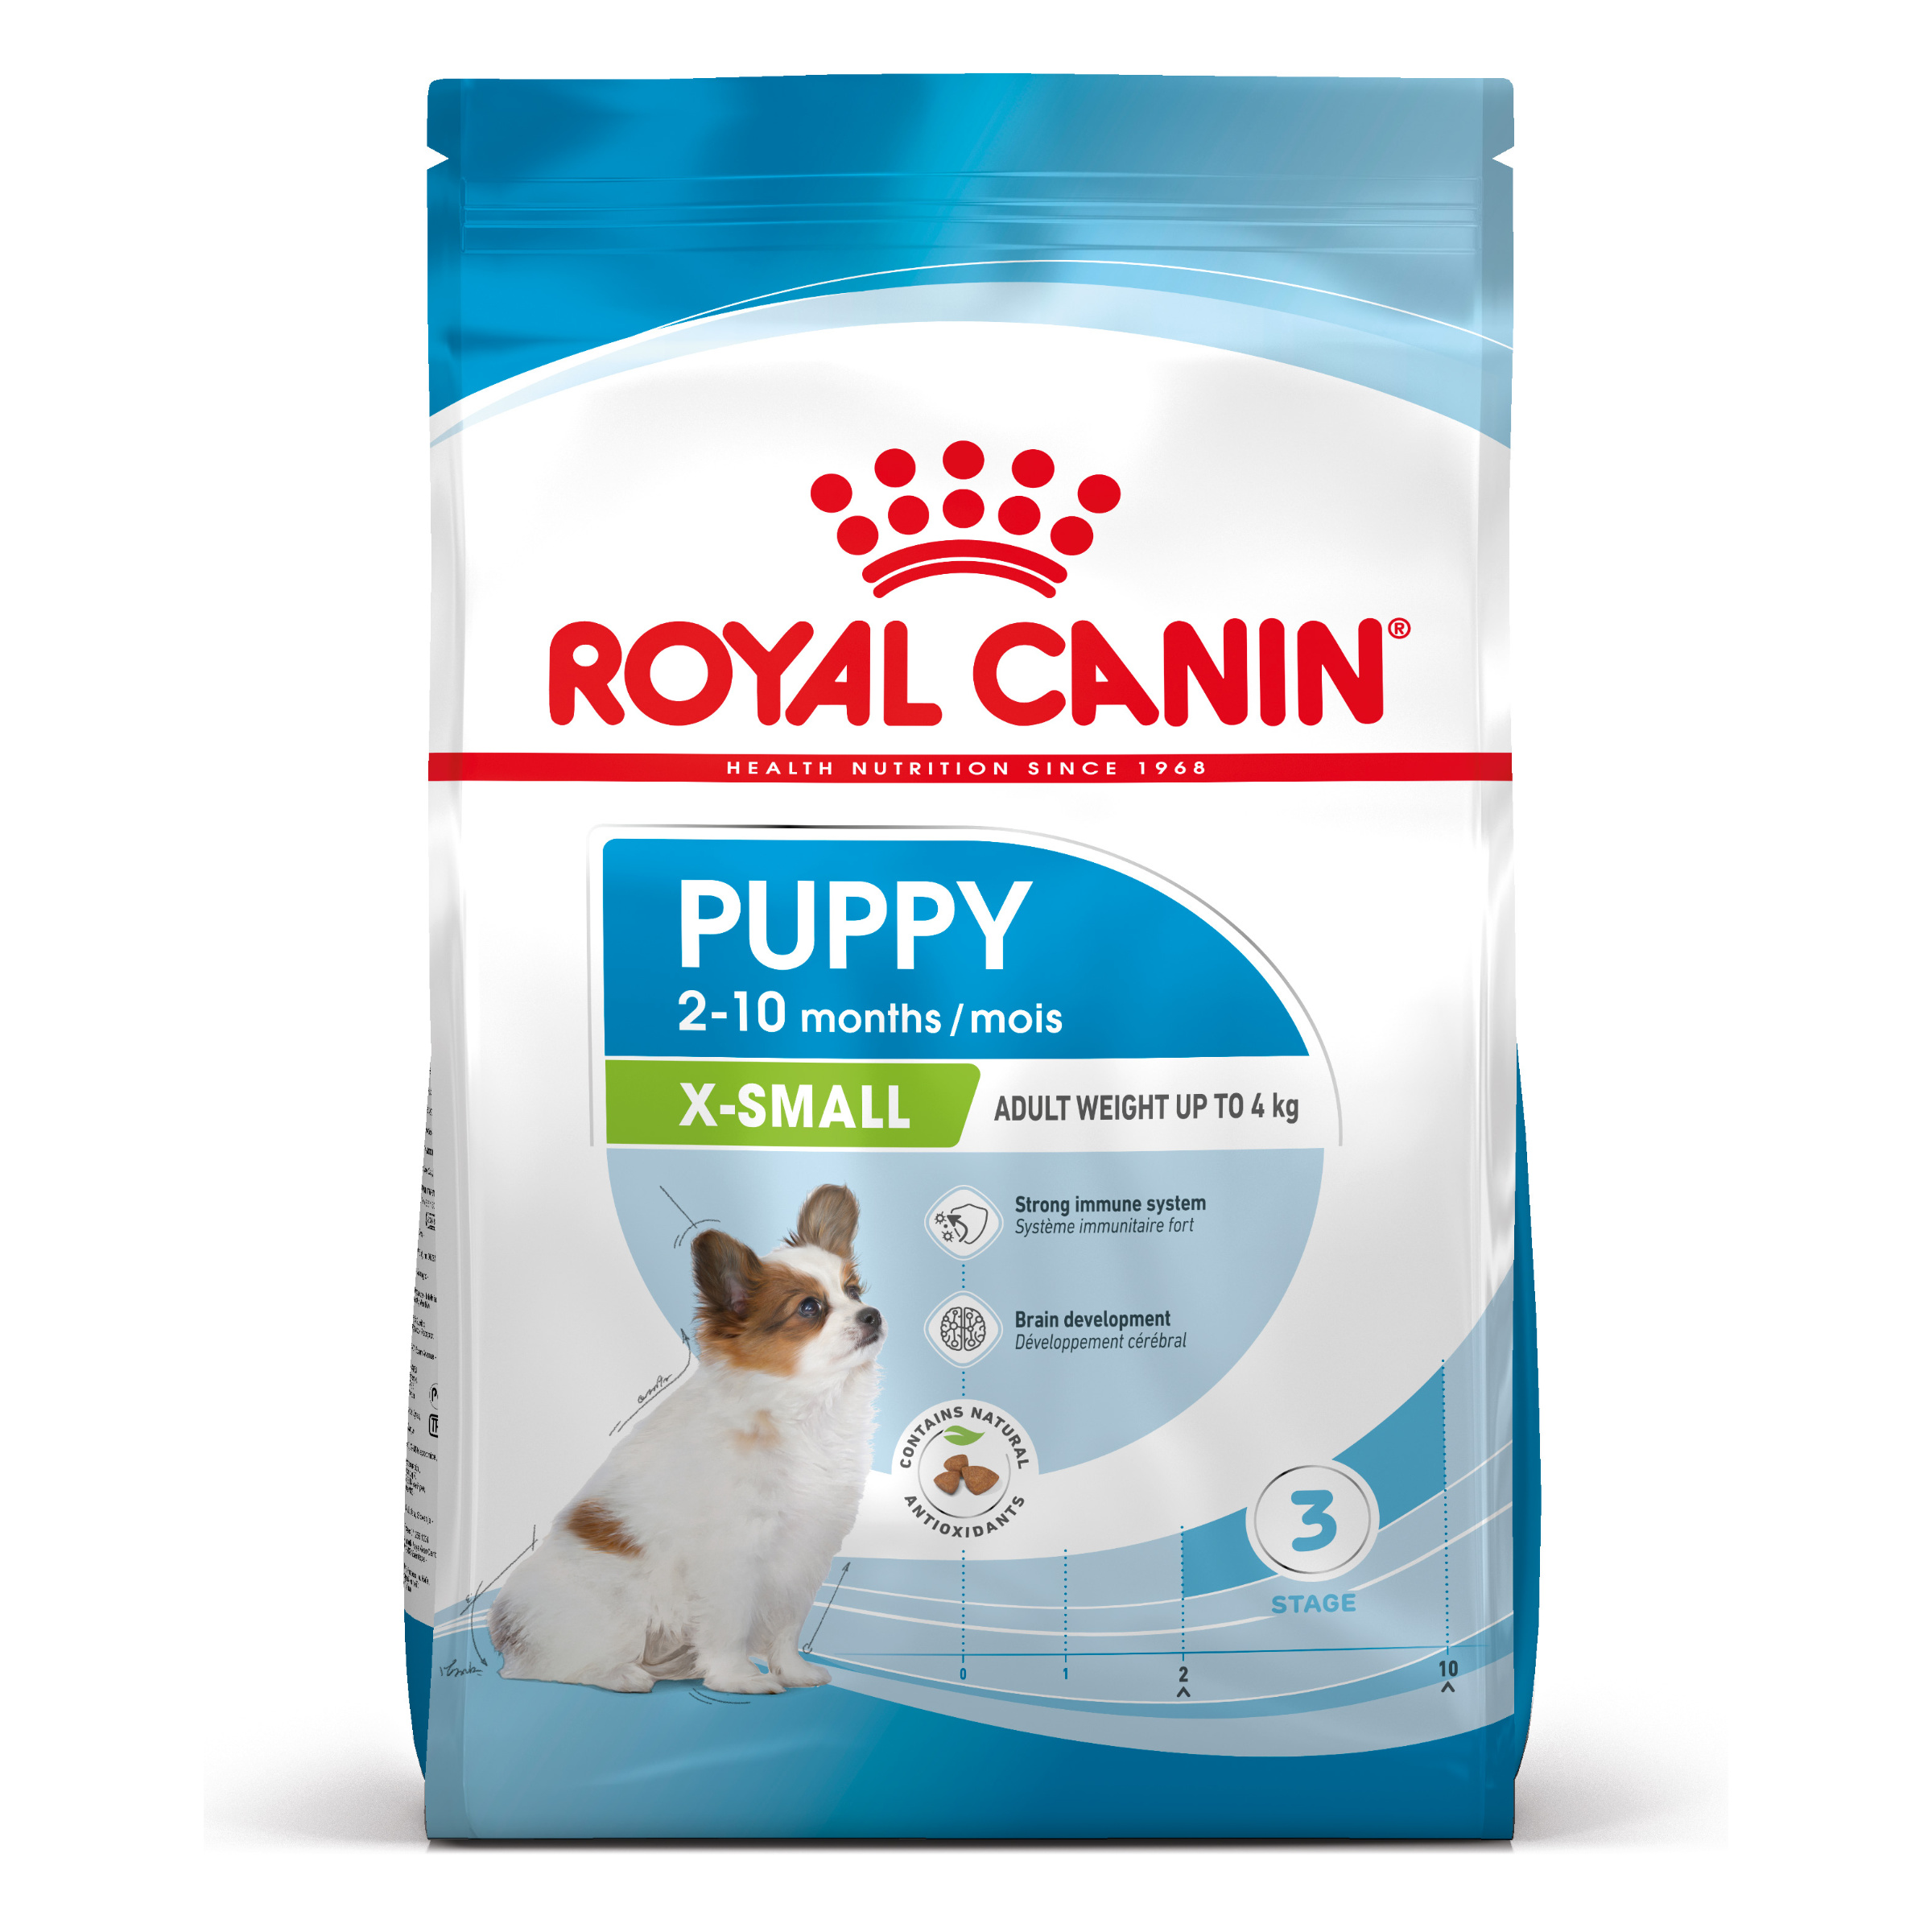 Royal Canin X-S Puppy - Aliment pour chiots de toutes petites races (poids adulte jusqu'à 4 kg) - Jusqu'à 10 mois - 3kg